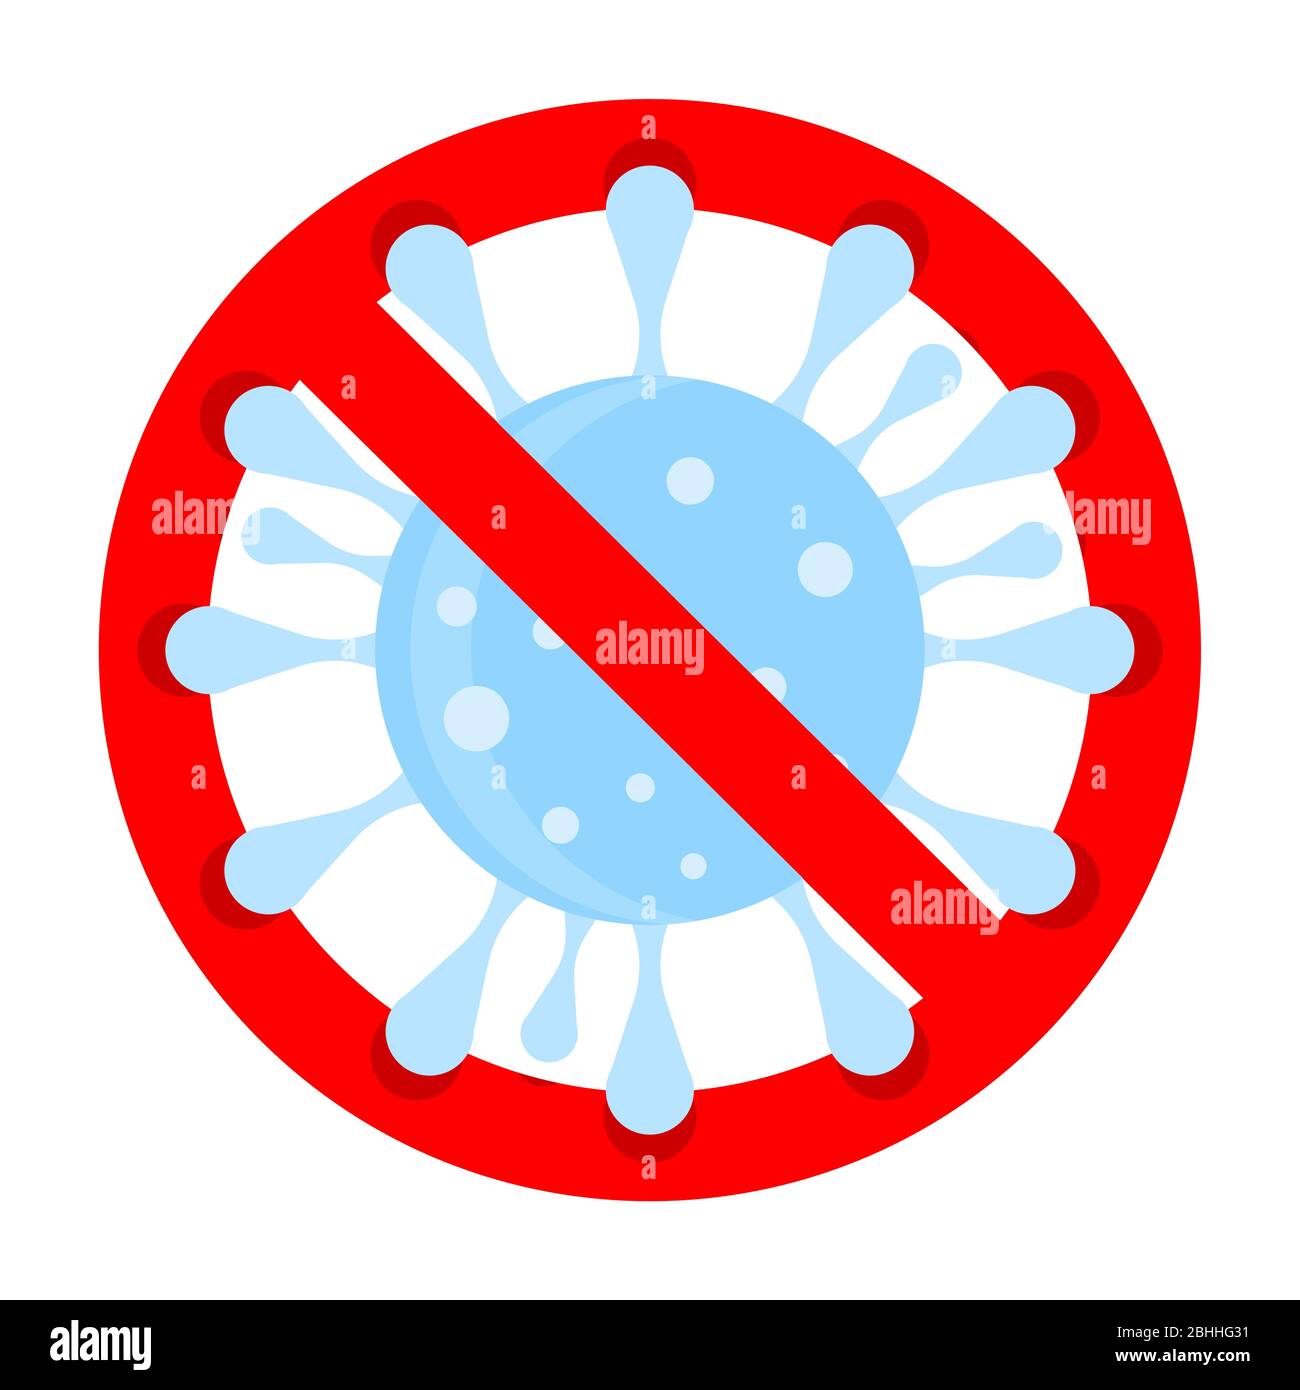 Verbot und Schutz der Influenza, Verbot covid-19, keine 2019-ncov, Corona-Virus Ausbruch verboten, verbieten und verboten Mikroben, Vektor-Illustration Stock Vektor